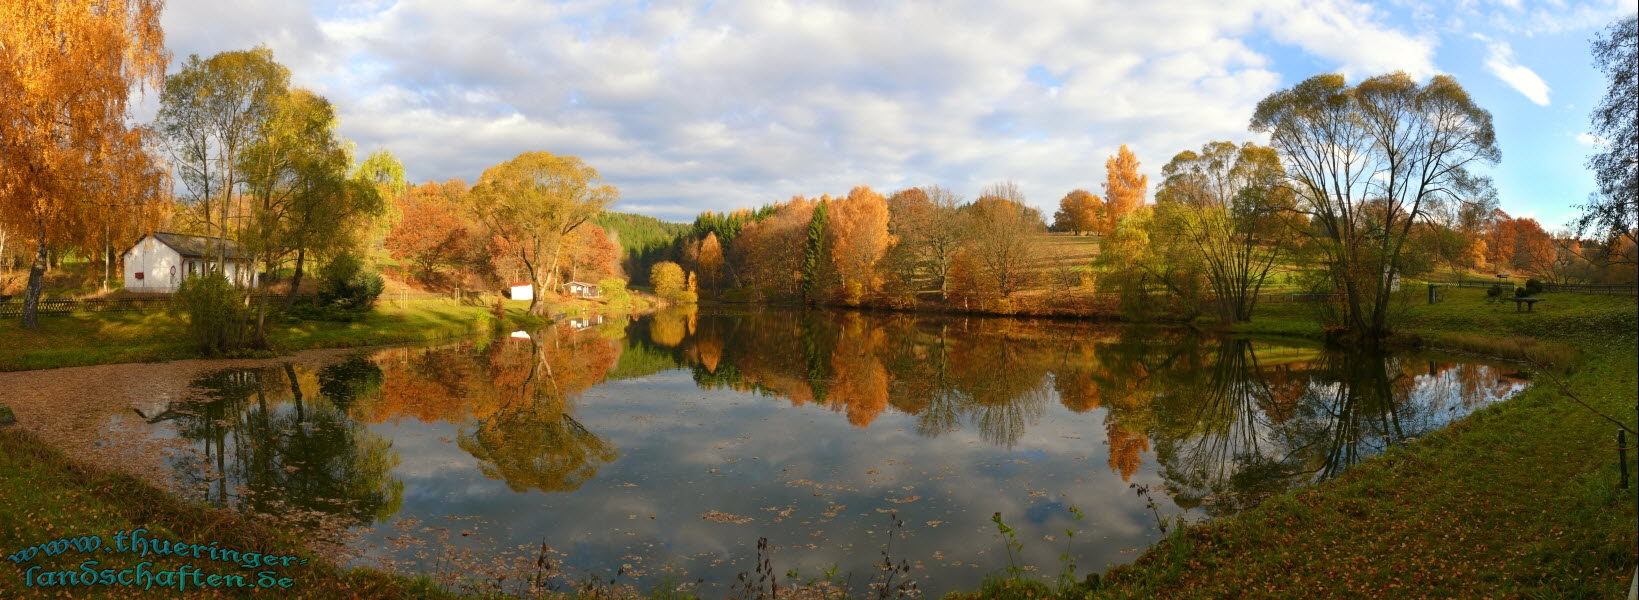 Brdner Teich im Herbst